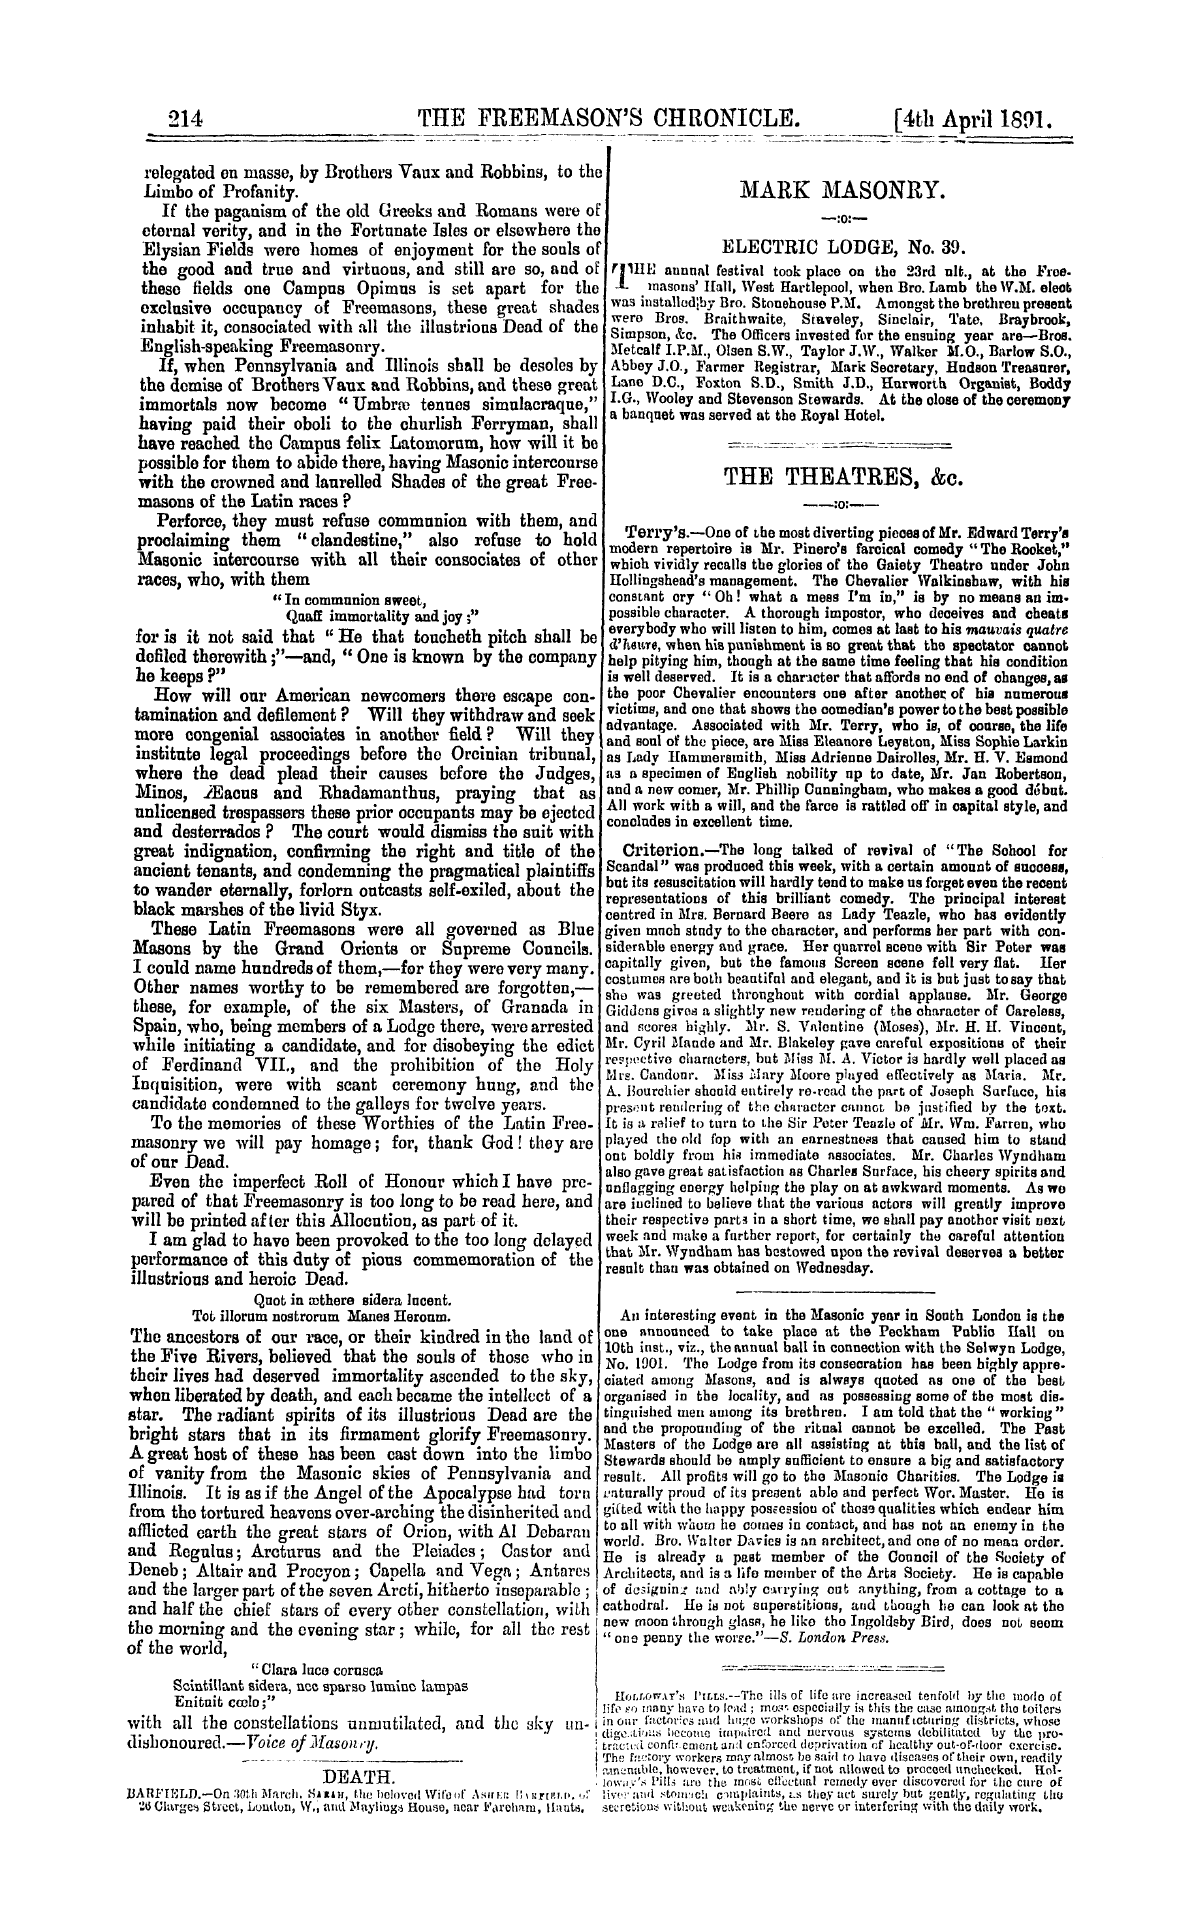 The Freemason's Chronicle: 1891-04-04 - Malevolent Utterances Rebuked.